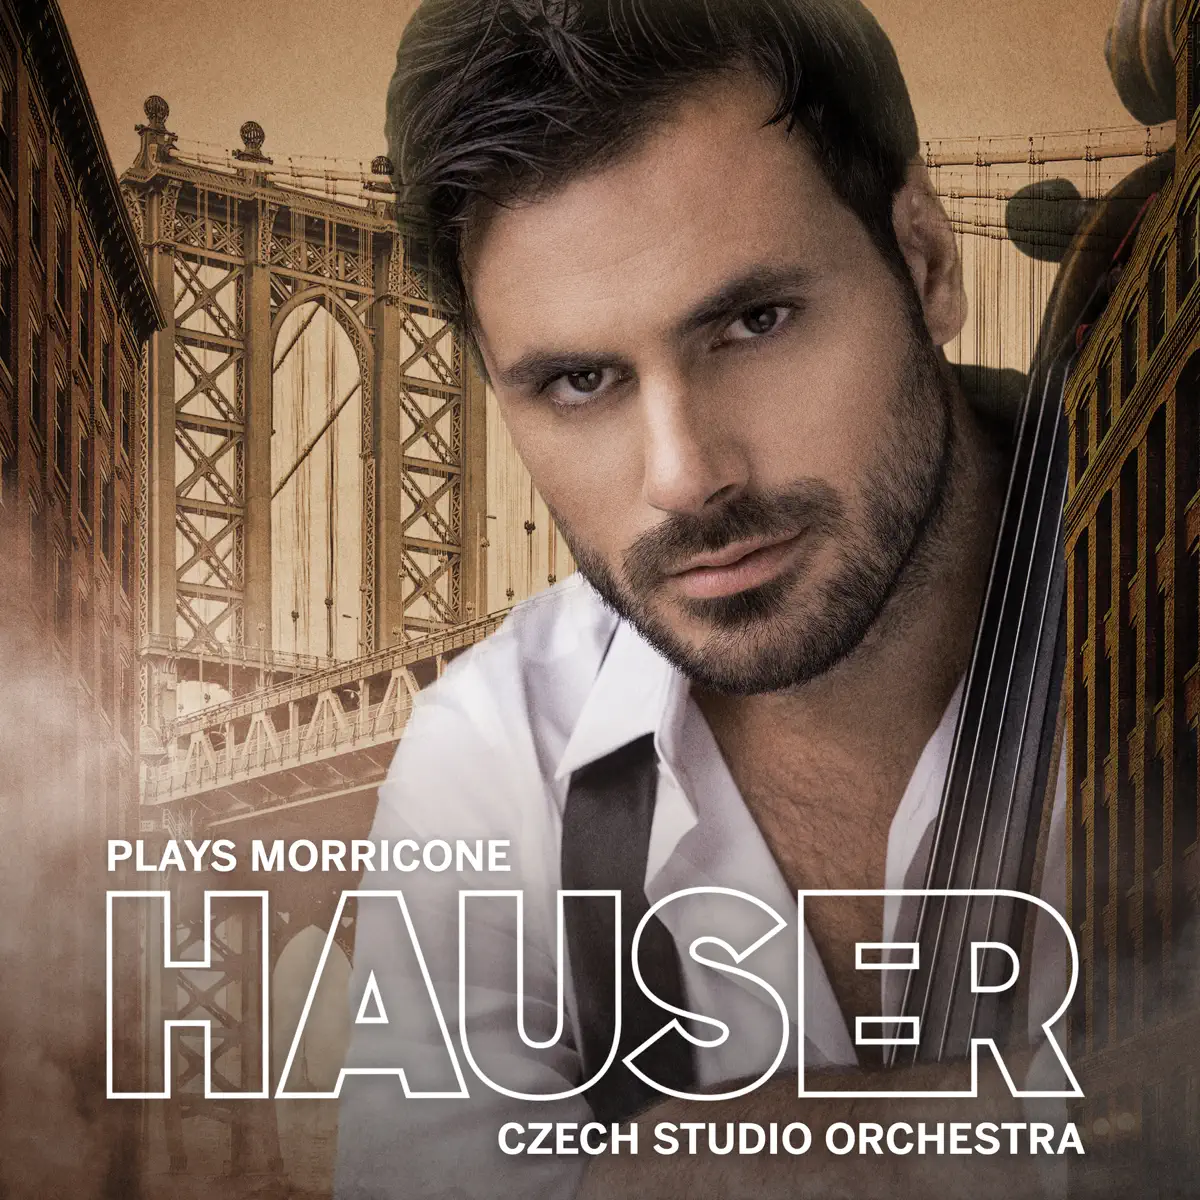 HAUSER, Czech Studio Orchestra & Robert Ziegler - HAUSER Plays Morricone (2020) [iTunes Plus AAC M4A]-新房子